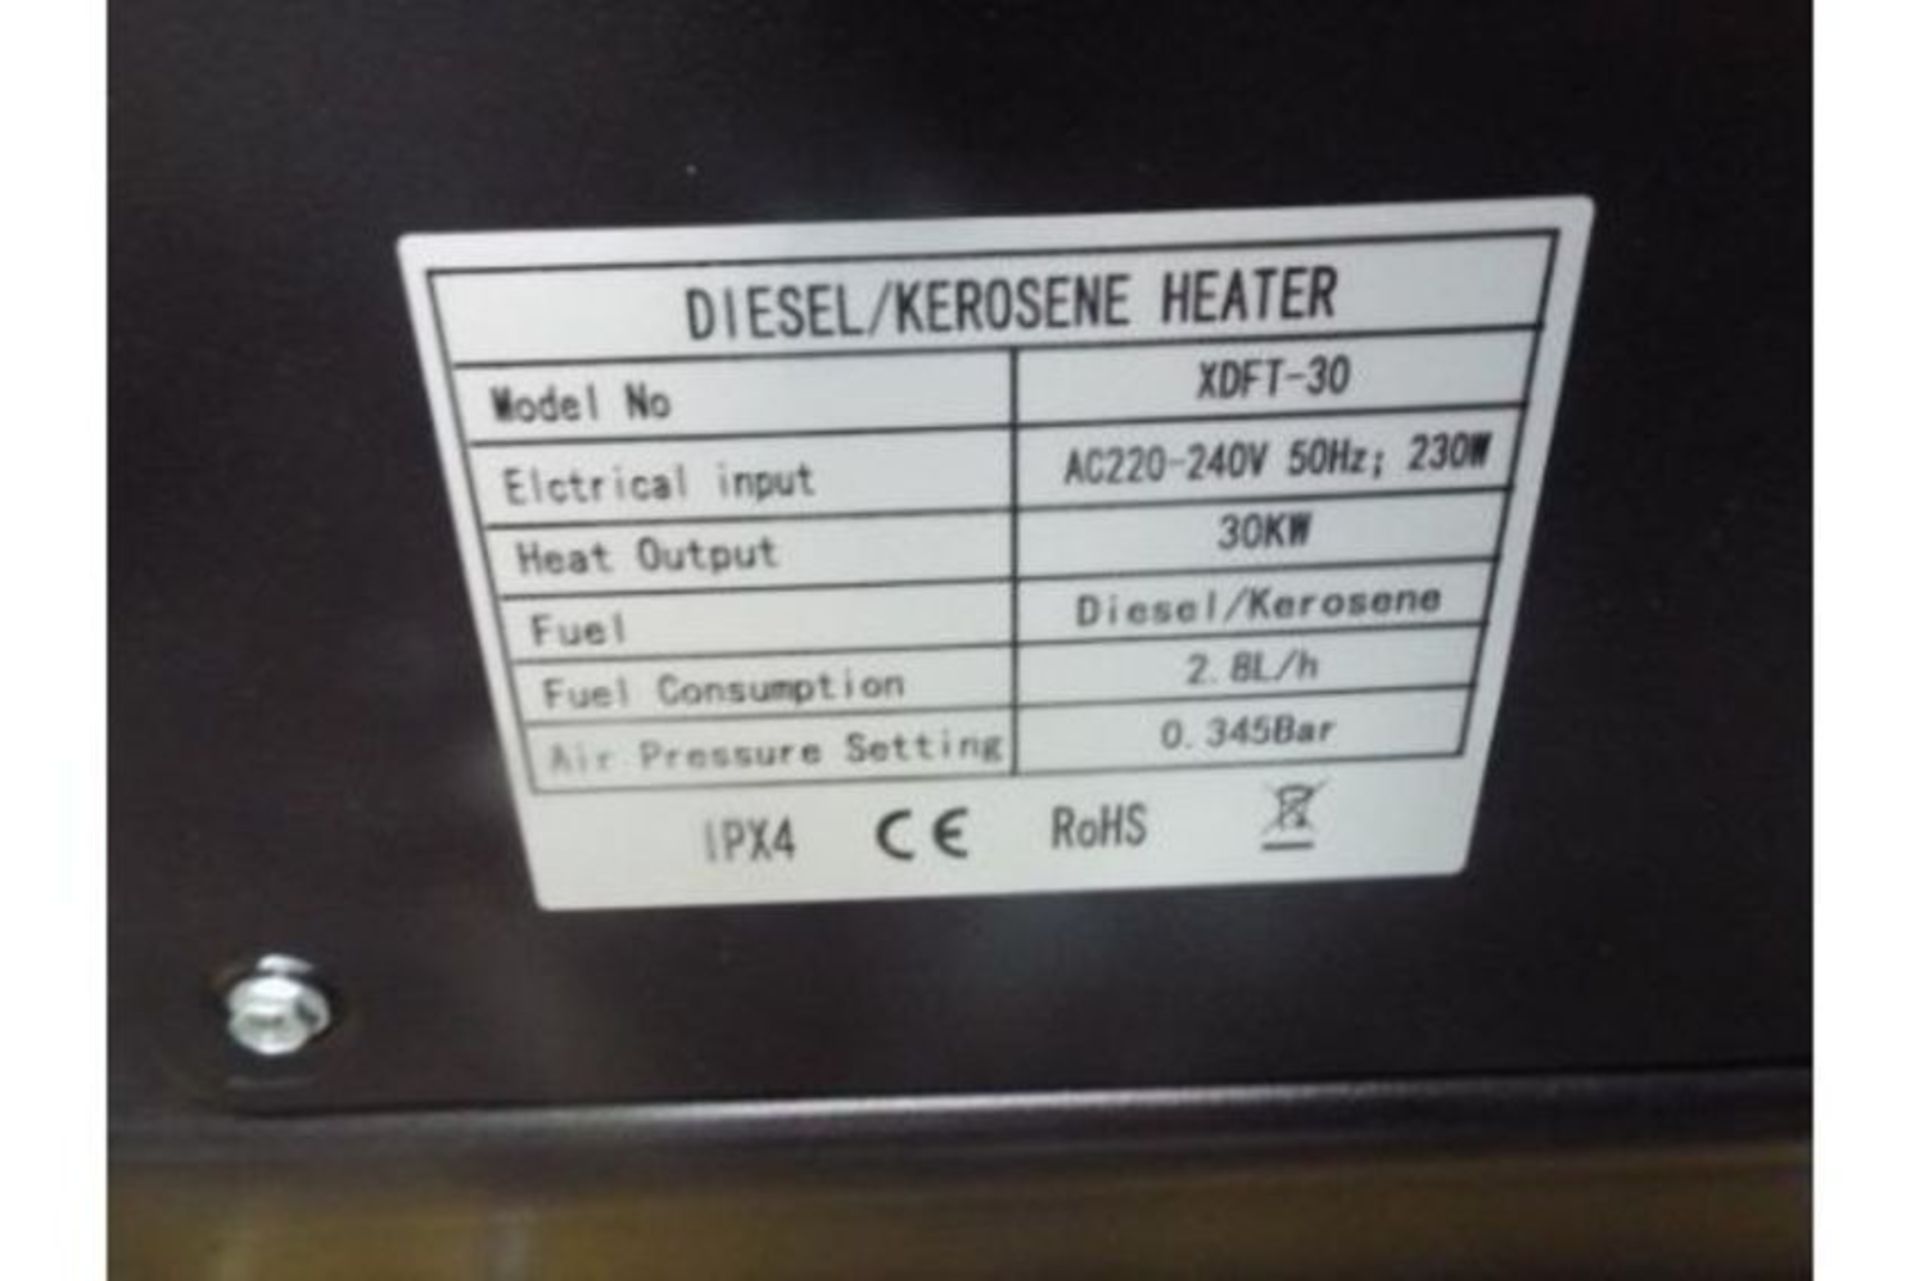 ** BRAND NEW ** XDFT-30 Diesel Space Heater - Image 7 of 9